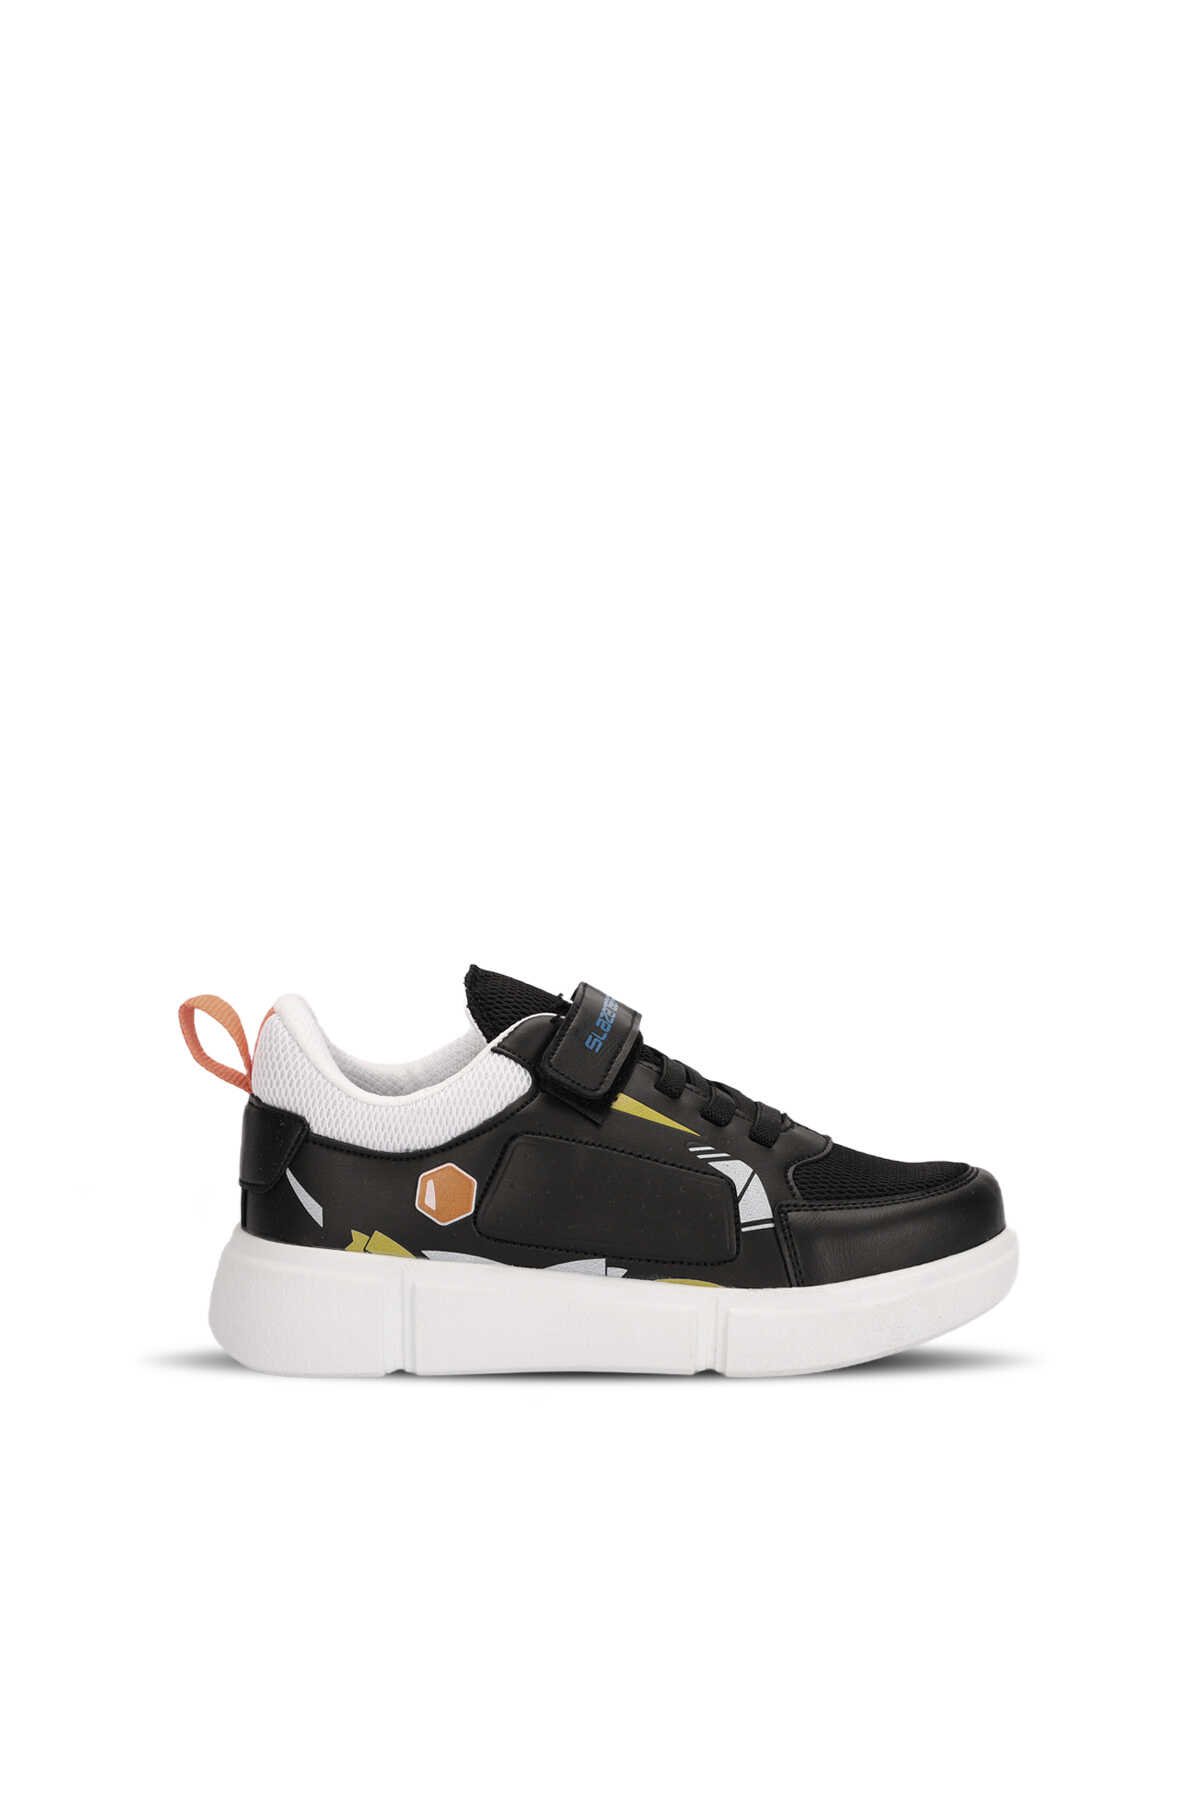 Slazenger - Slazenger KEPA Sneaker Erkek Çocuk Ayakkabı Siyah / Beyaz